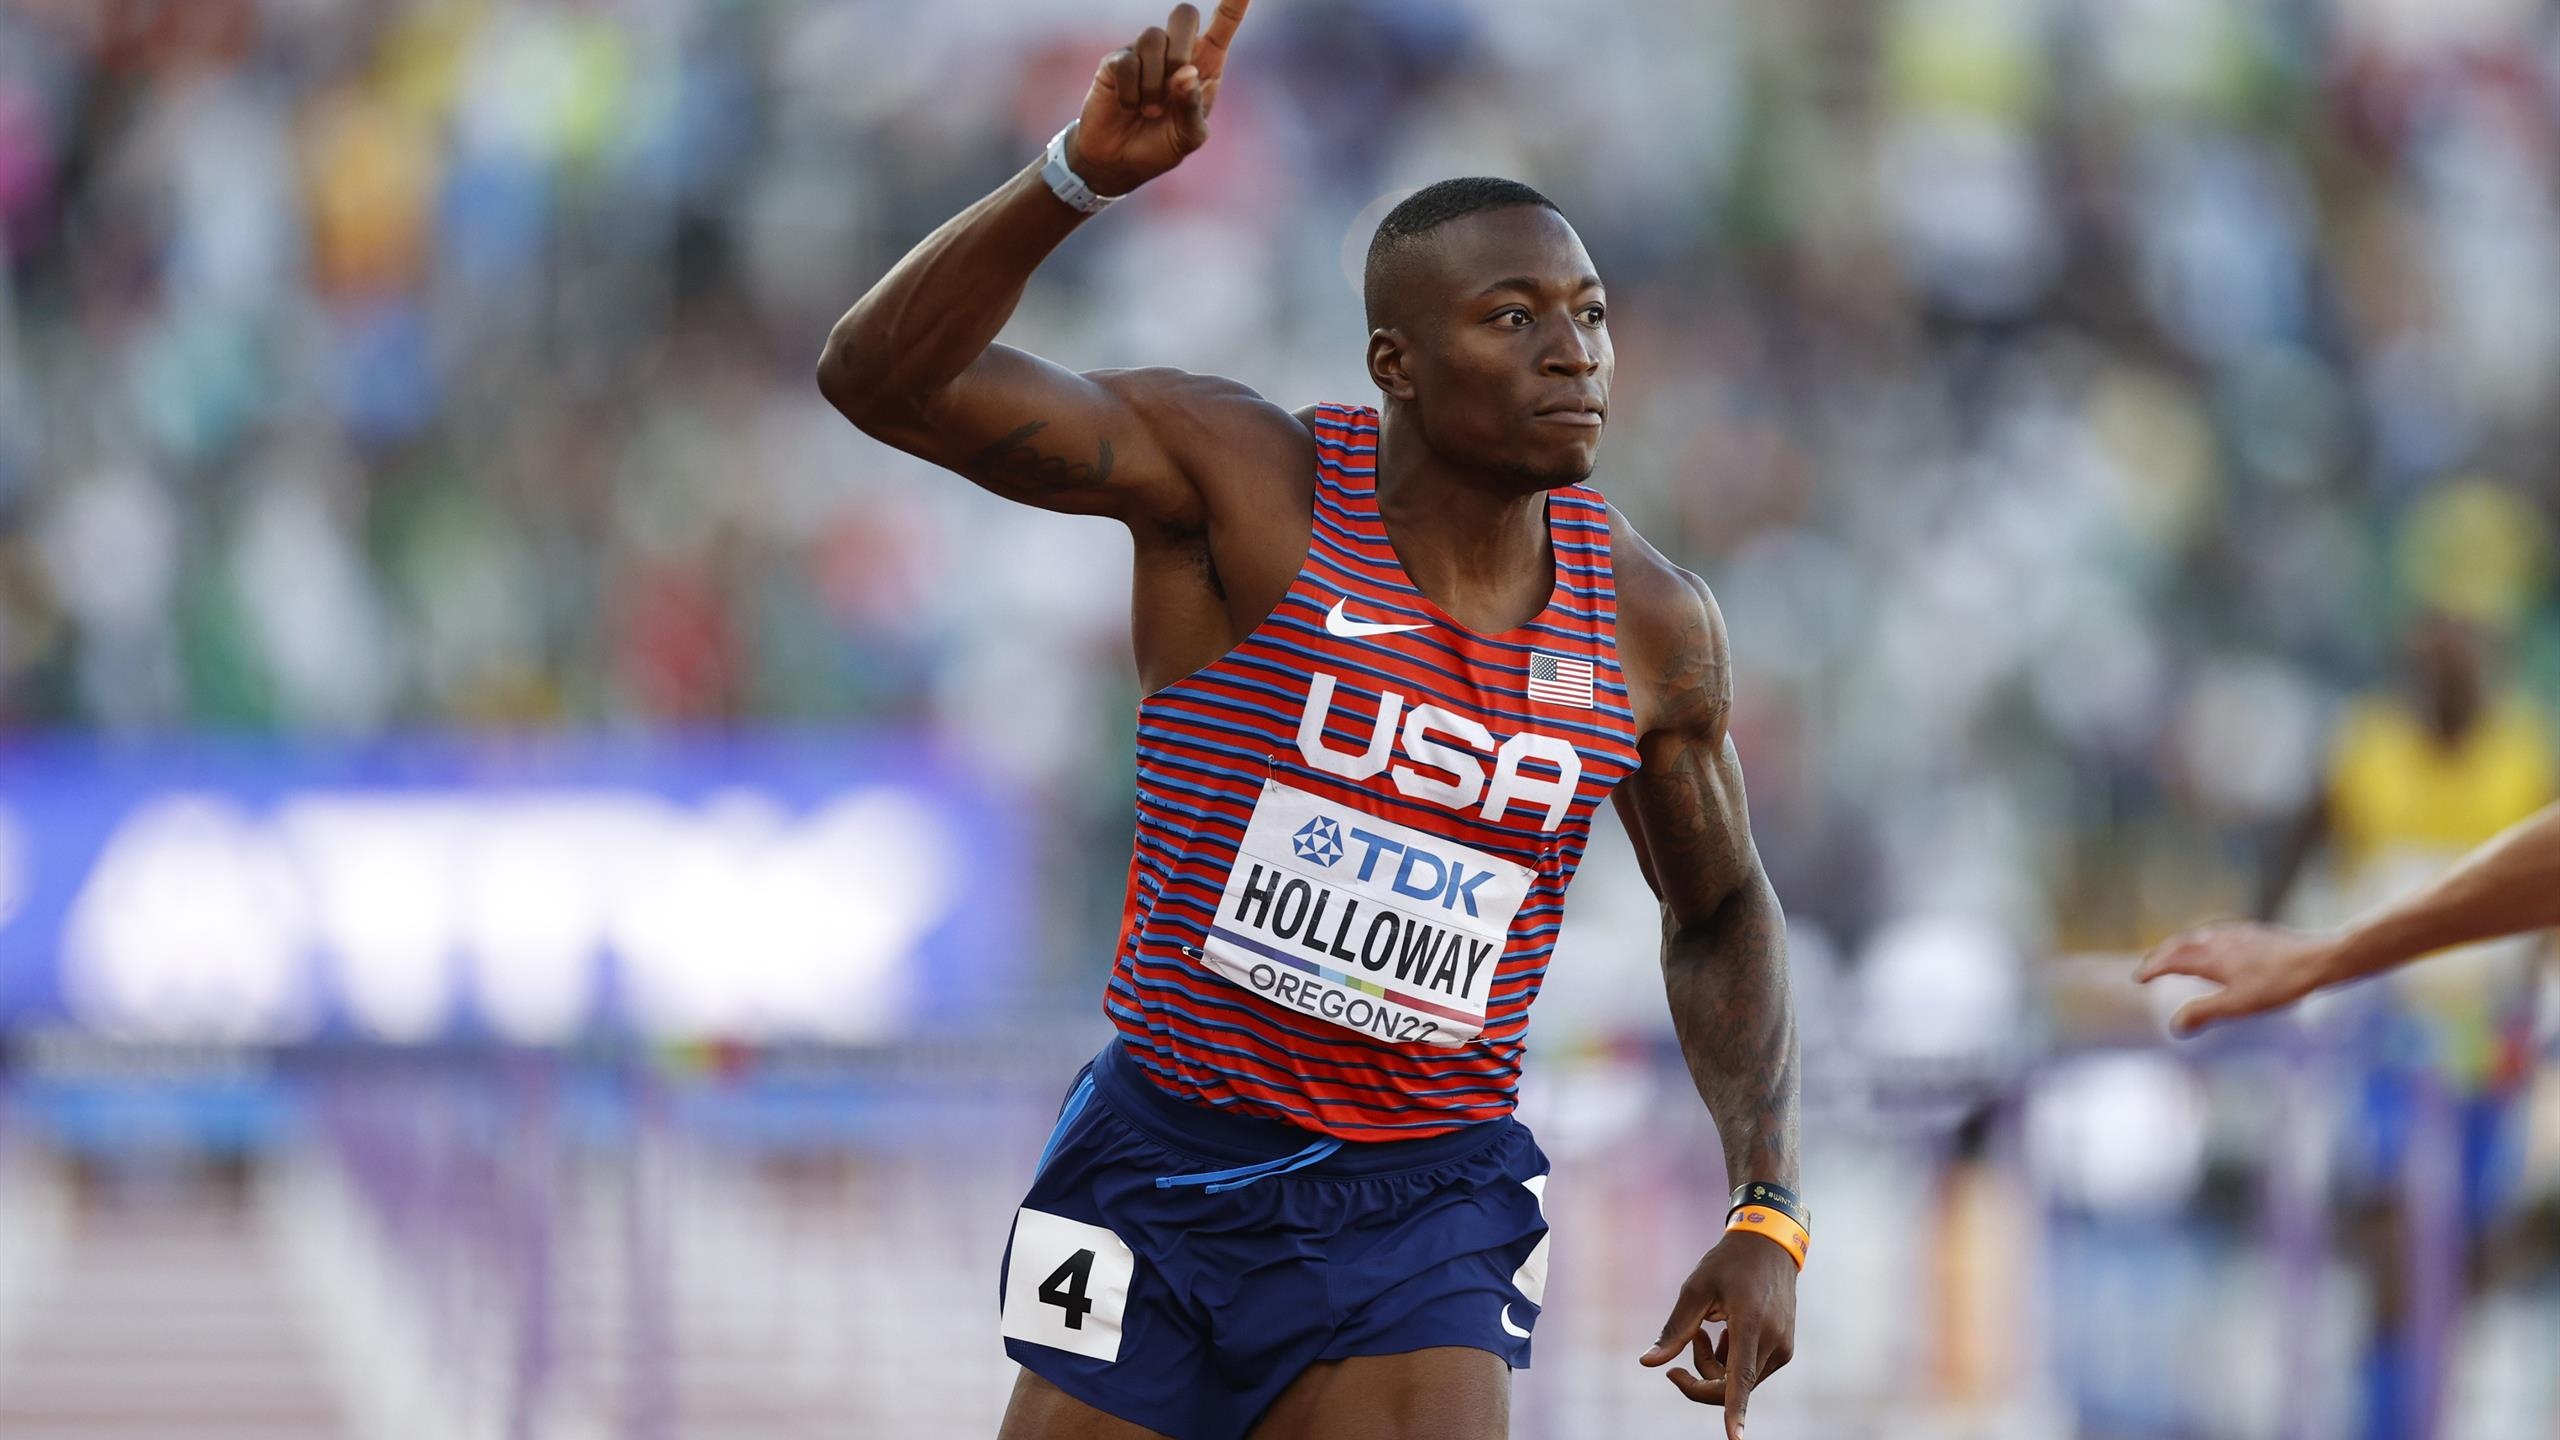 Grant Holloway, Sports talent, Rising star, Track and field, 2560x1440 HD Desktop